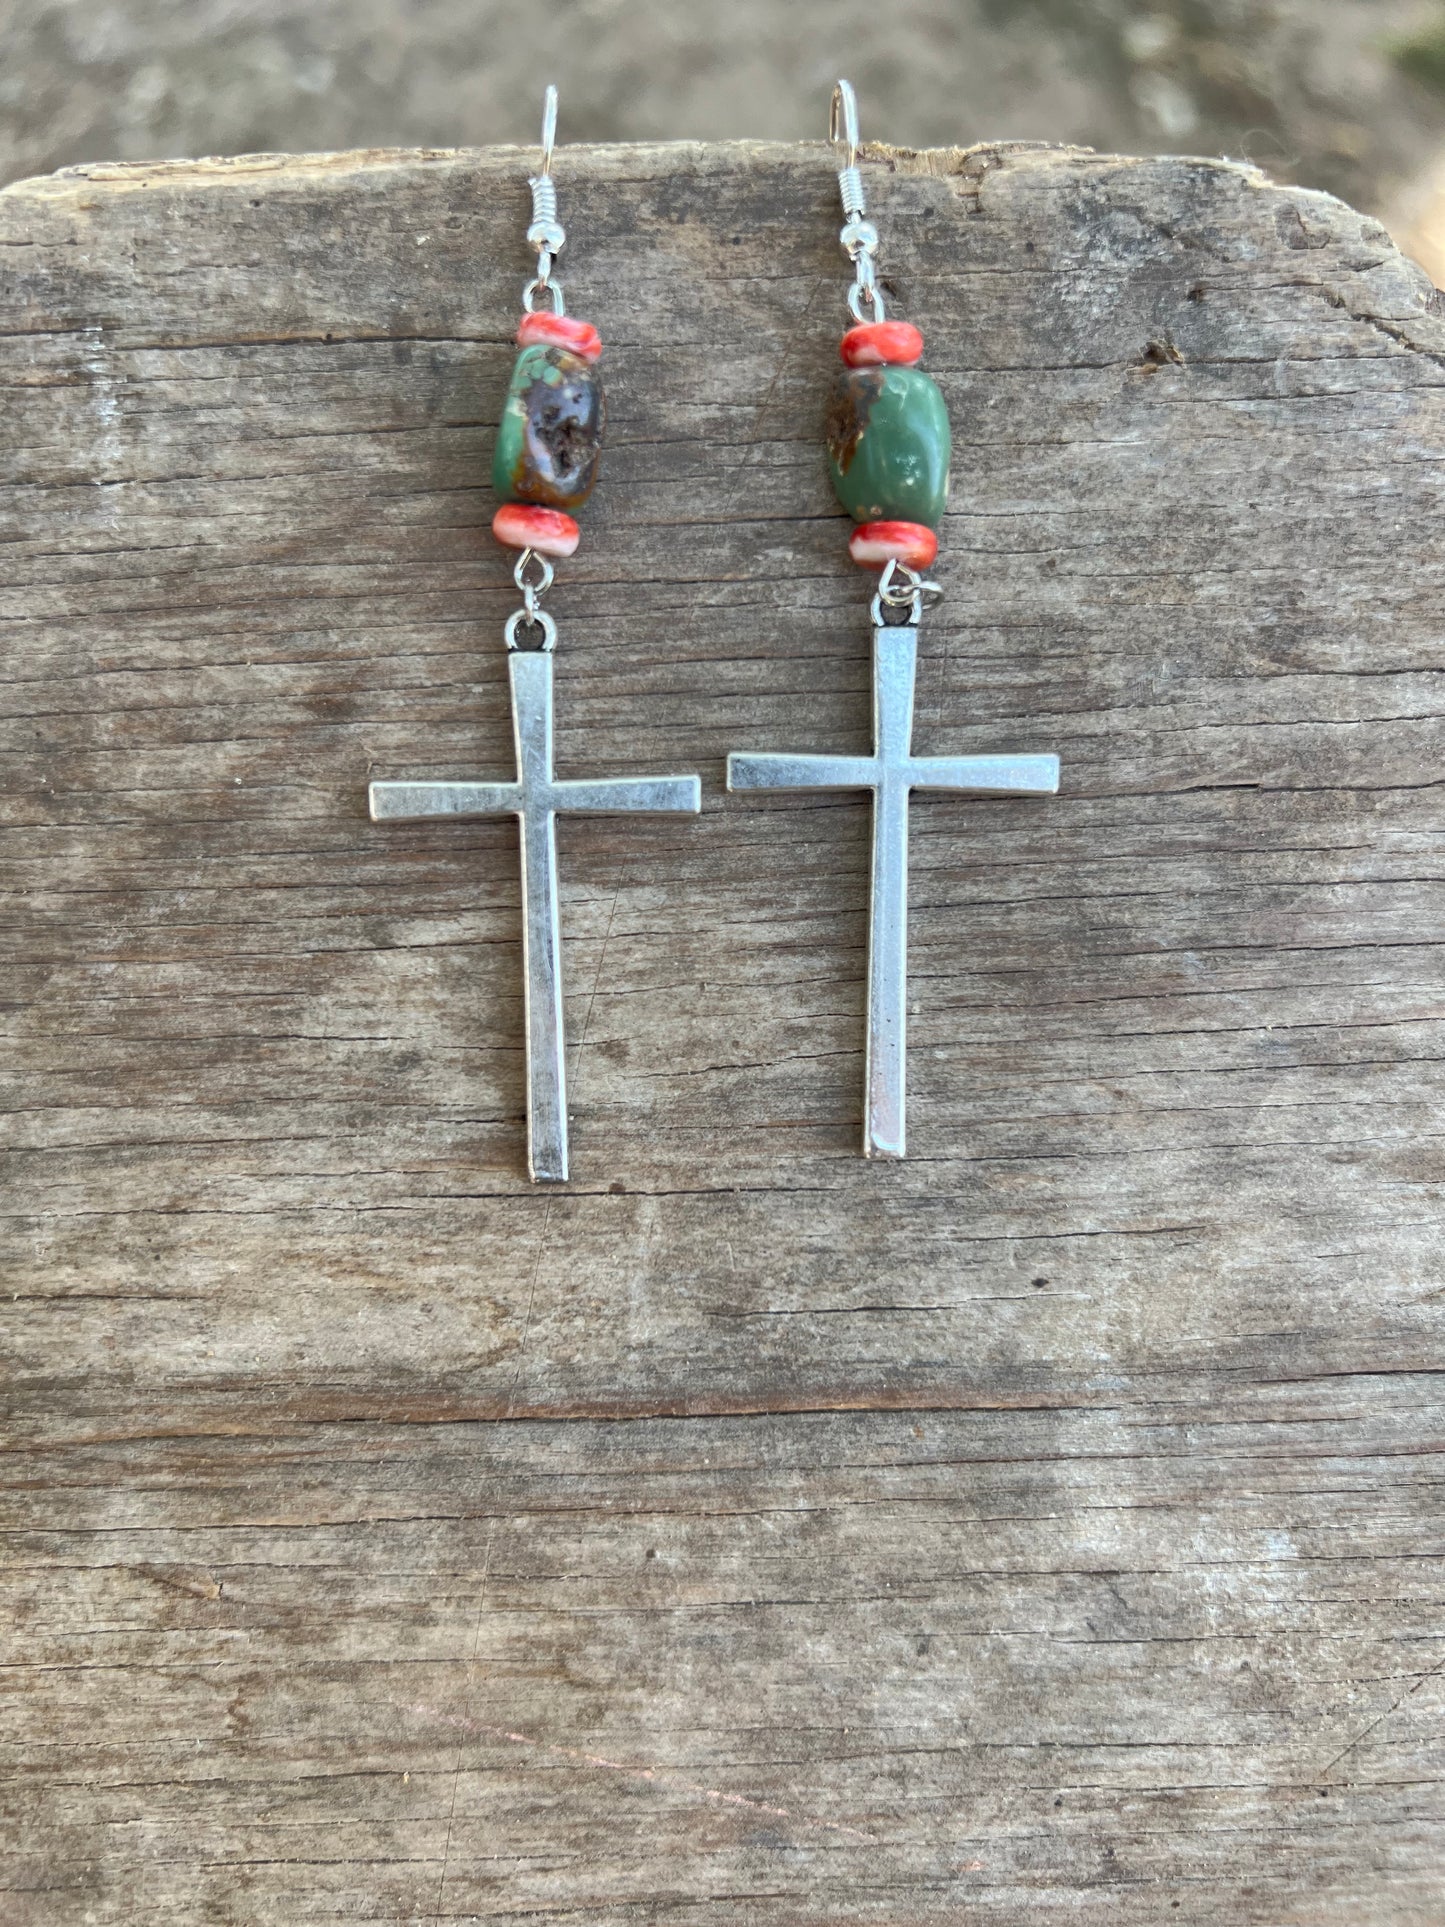 The Cross Earrings